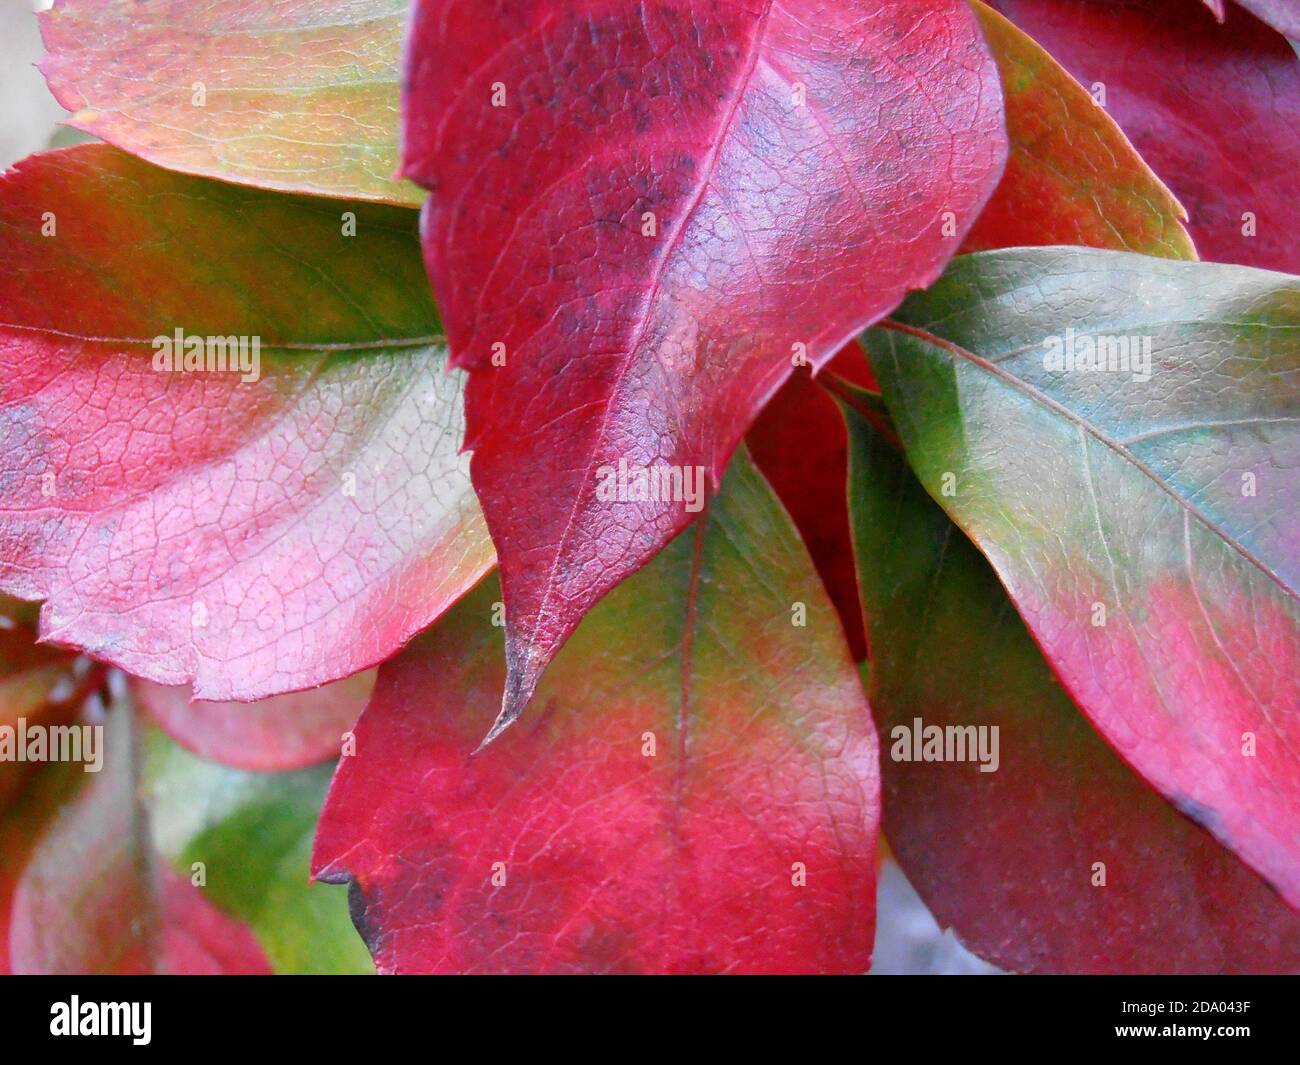 Bunte Blätter mit Mustern, bunte Blätter Makro, rot, grün und gelb Farben Blätter, Herbstblätter, Makro-Fotografie, Stock Bild Stockfoto